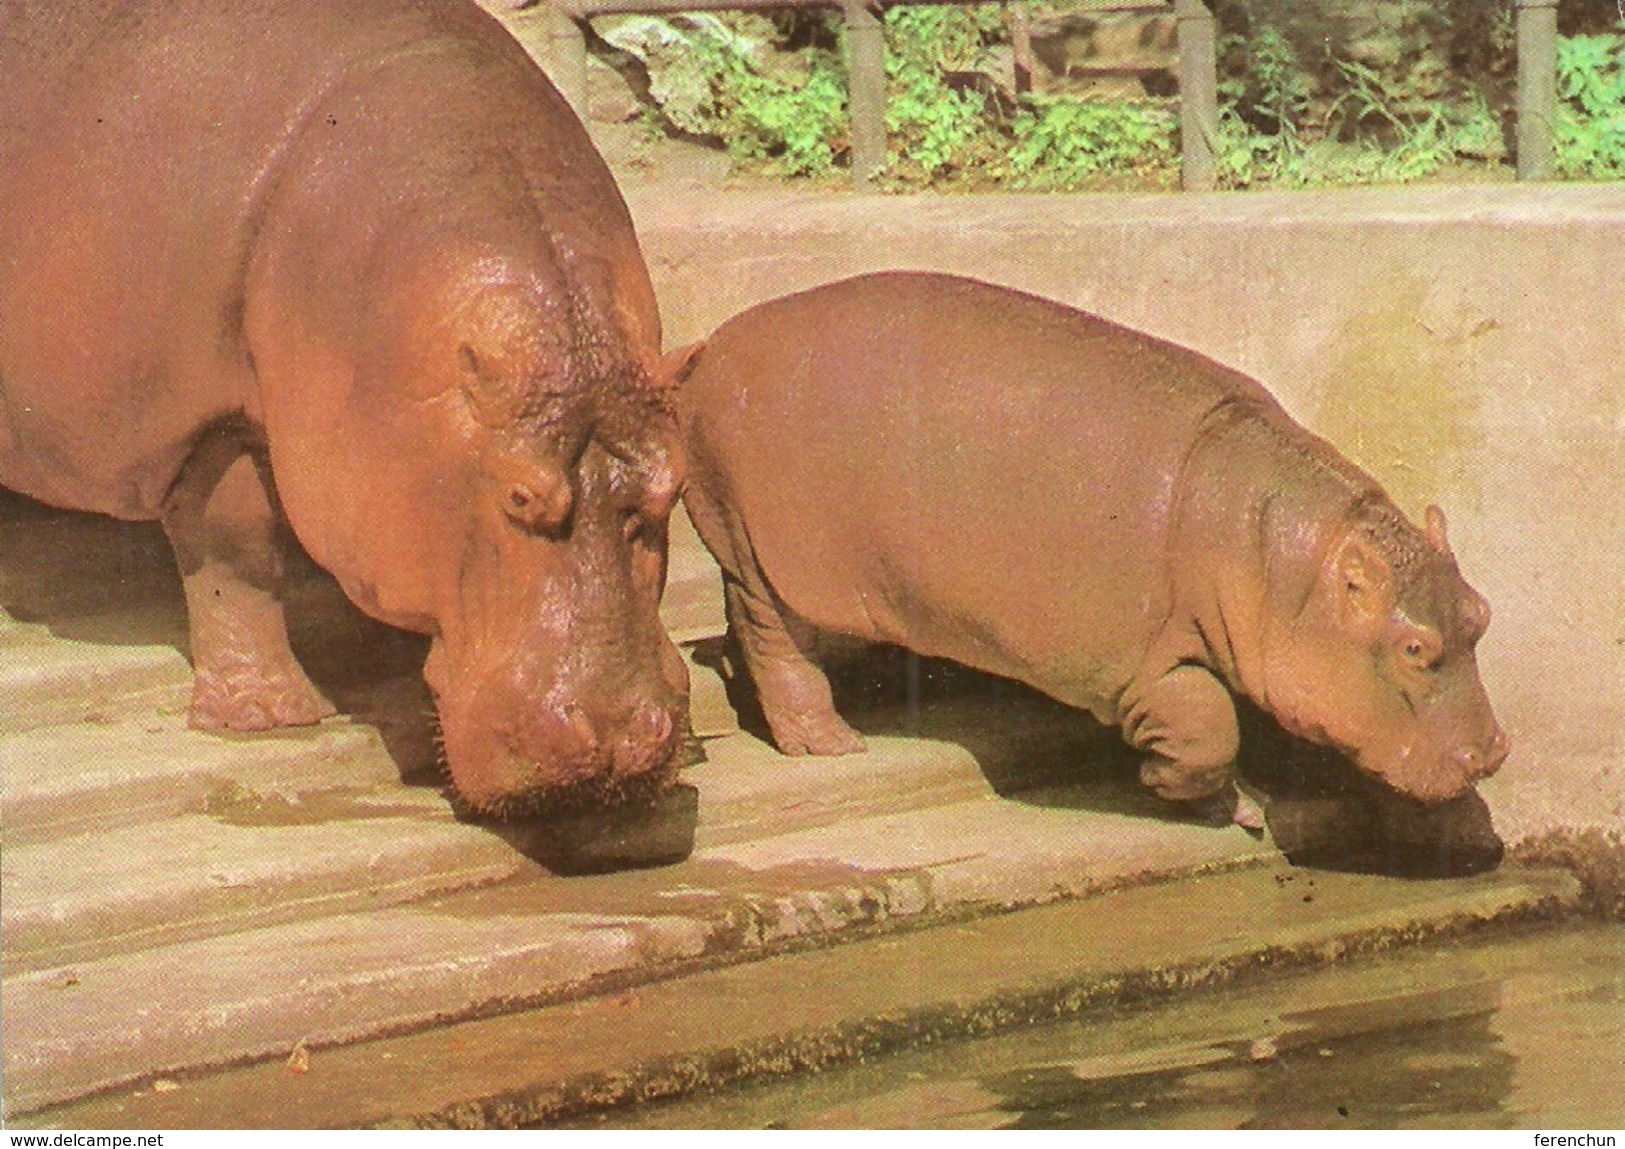 HIPPOPOTAMUS * BABY HIPPO * ANIMAL * ZOO & BOTANICAL GARDEN * BUDAPEST * KAK 0028 722 * Hungary - Flusspferde